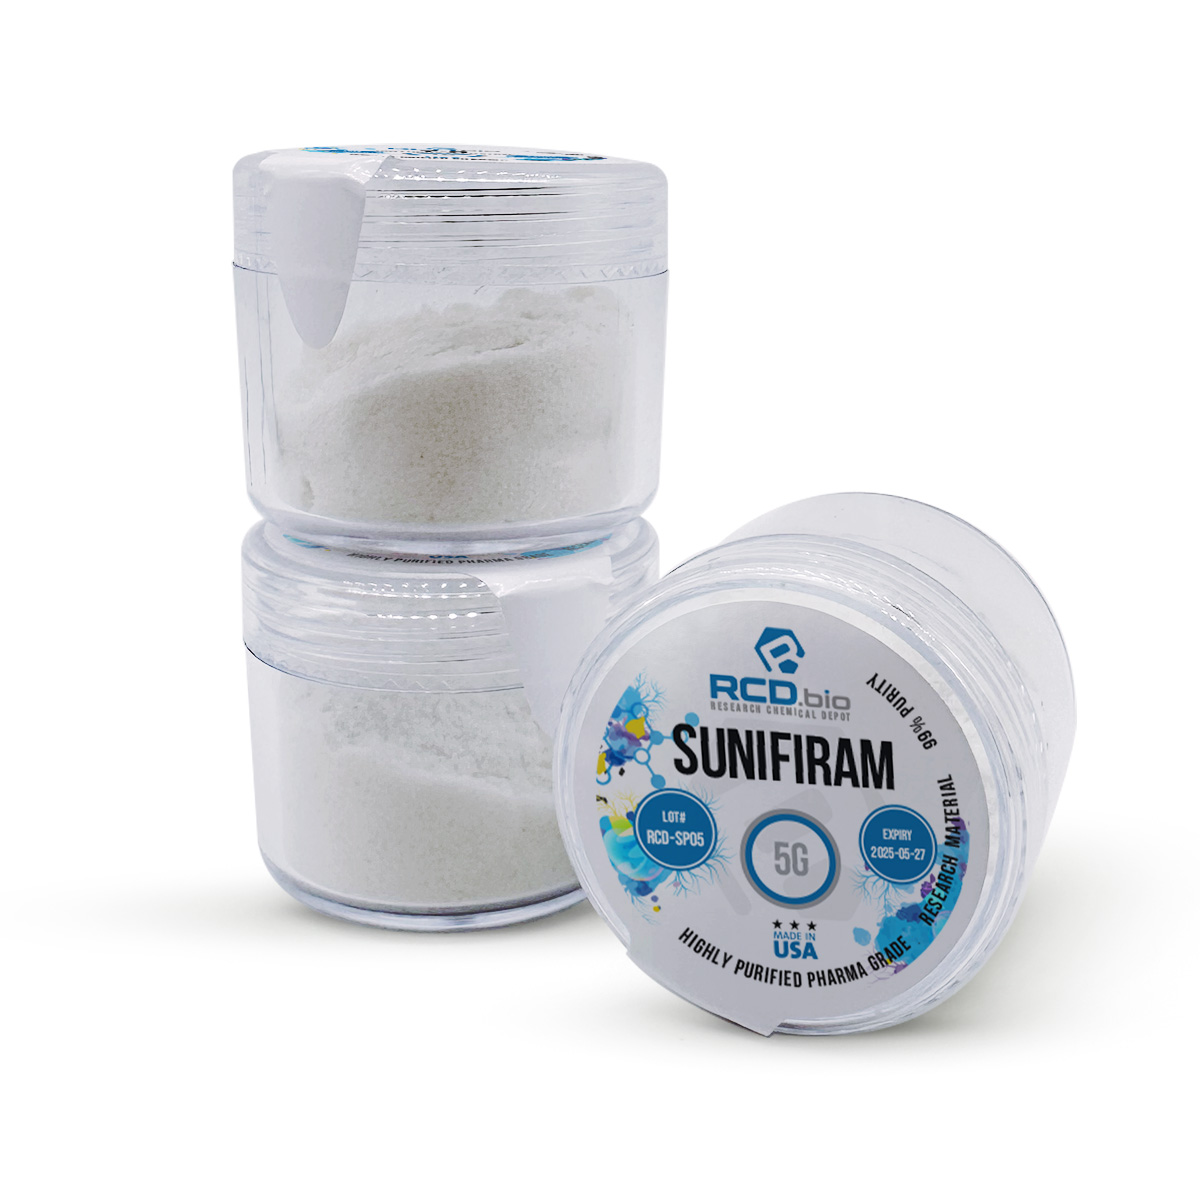 Sunifiram Powder for Sale | Fast Shipping | RCD.bio